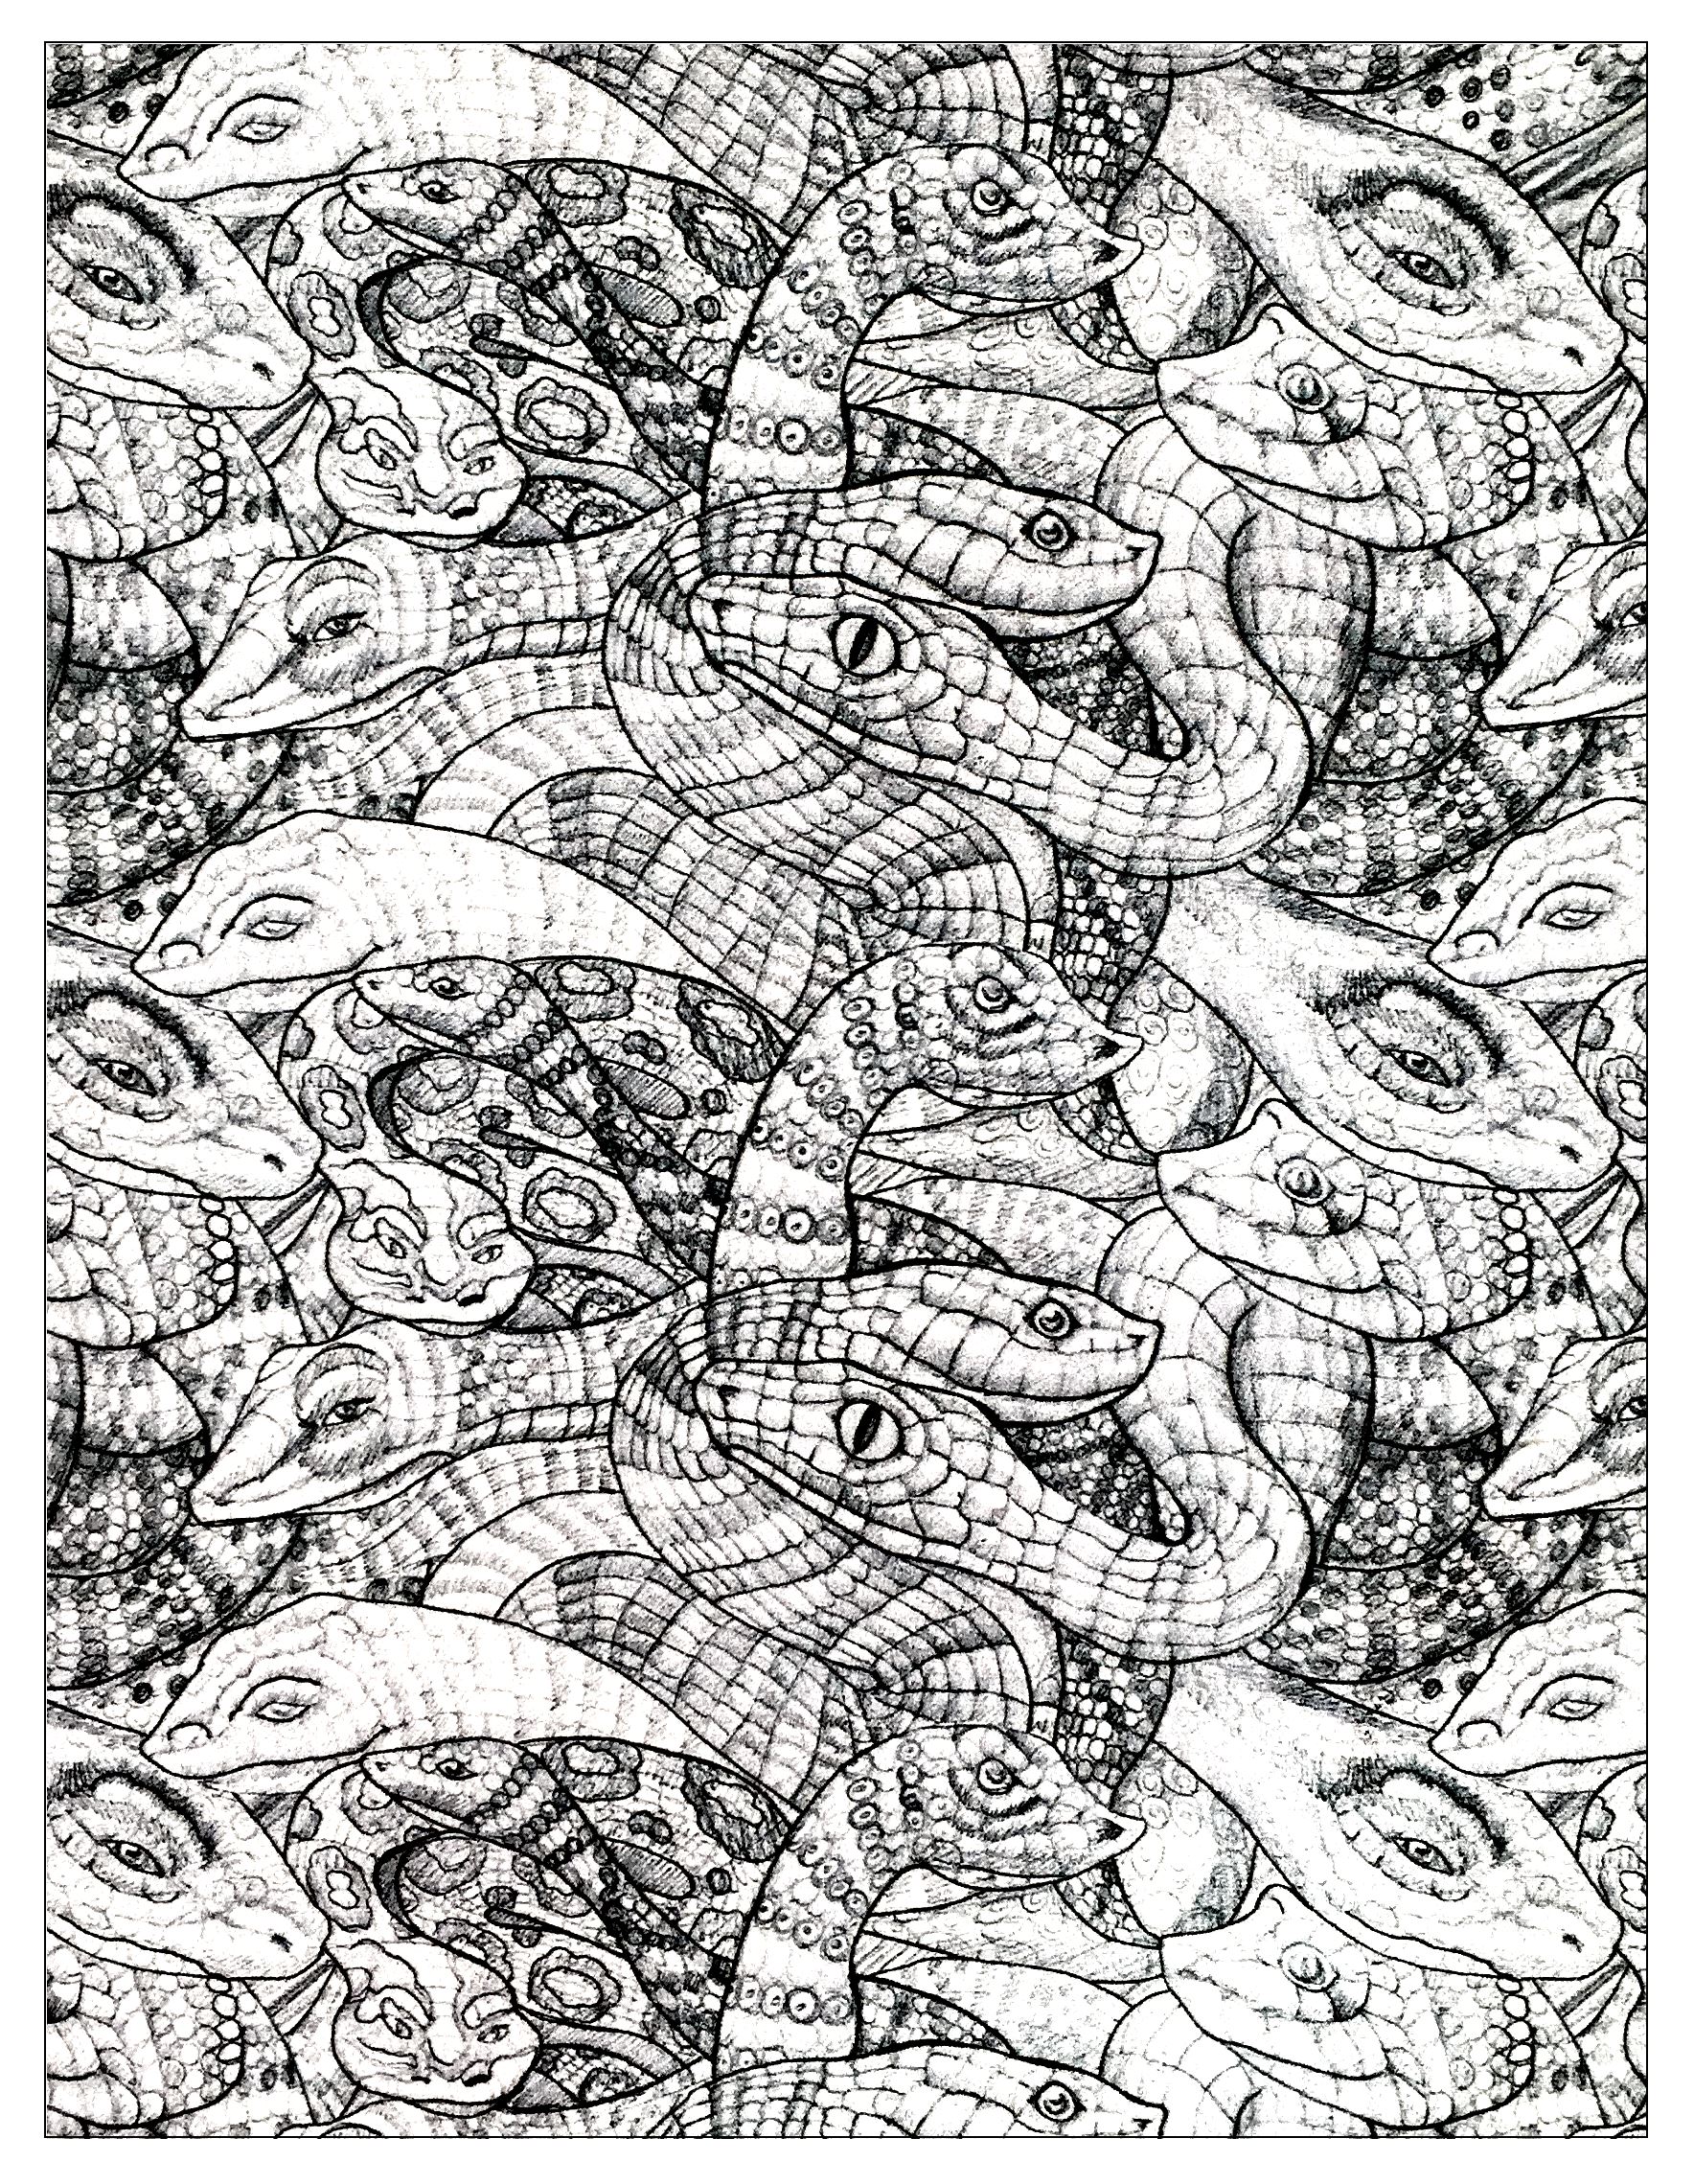 Desenho de serpentes emaranhadas com escamas desenhadas de forma precisa e realista